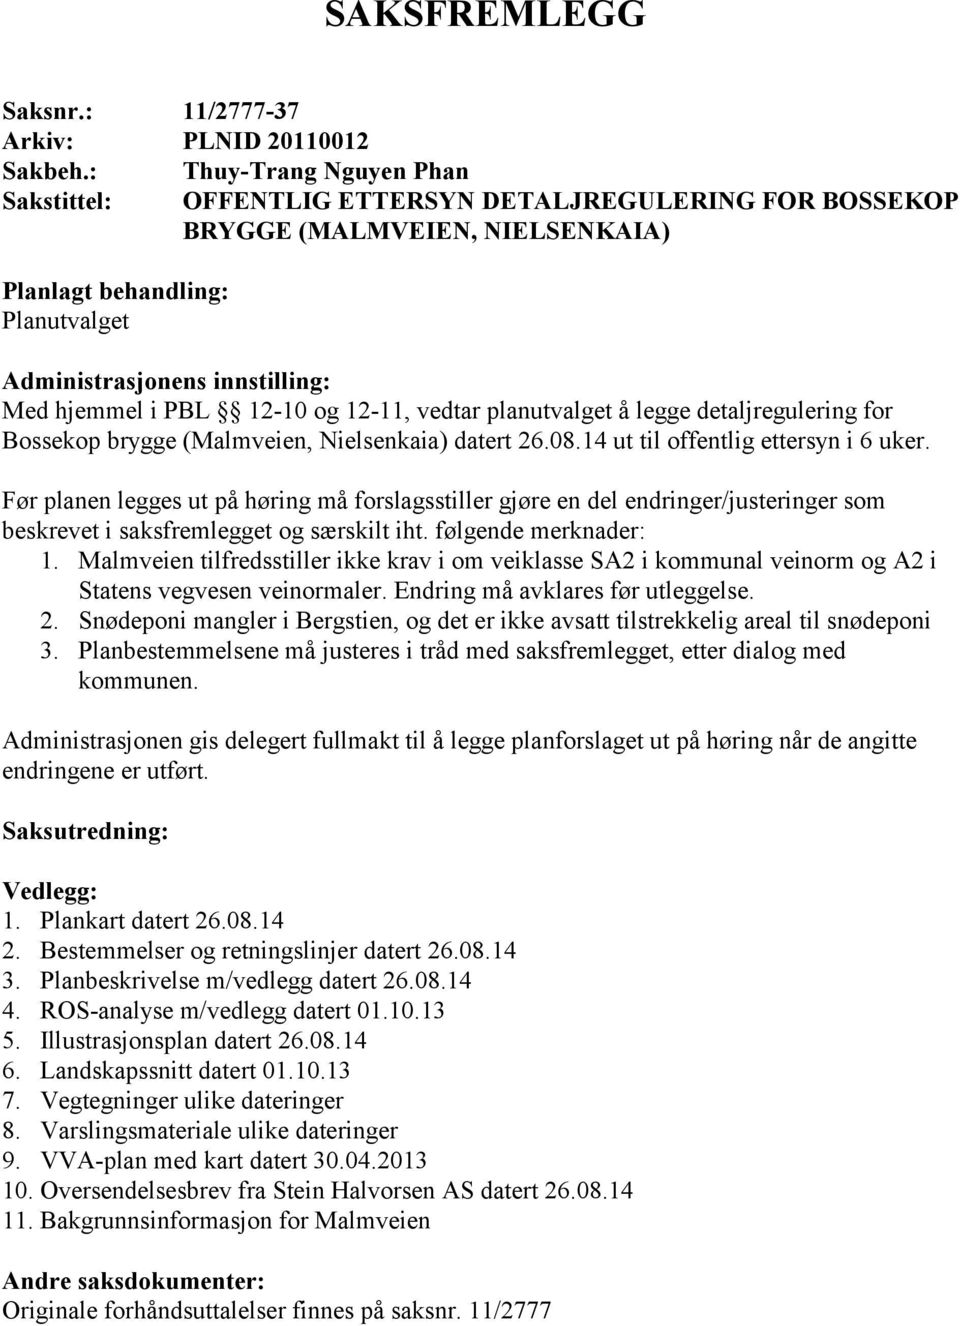 PBL 12-10 og 12-11, vedtar planutvalget å legge detaljregulering for Bossekop brygge (Malmveien, Nielsenkaia) datert 26.08.14 ut til offentlig ettersyn i 6 uker.